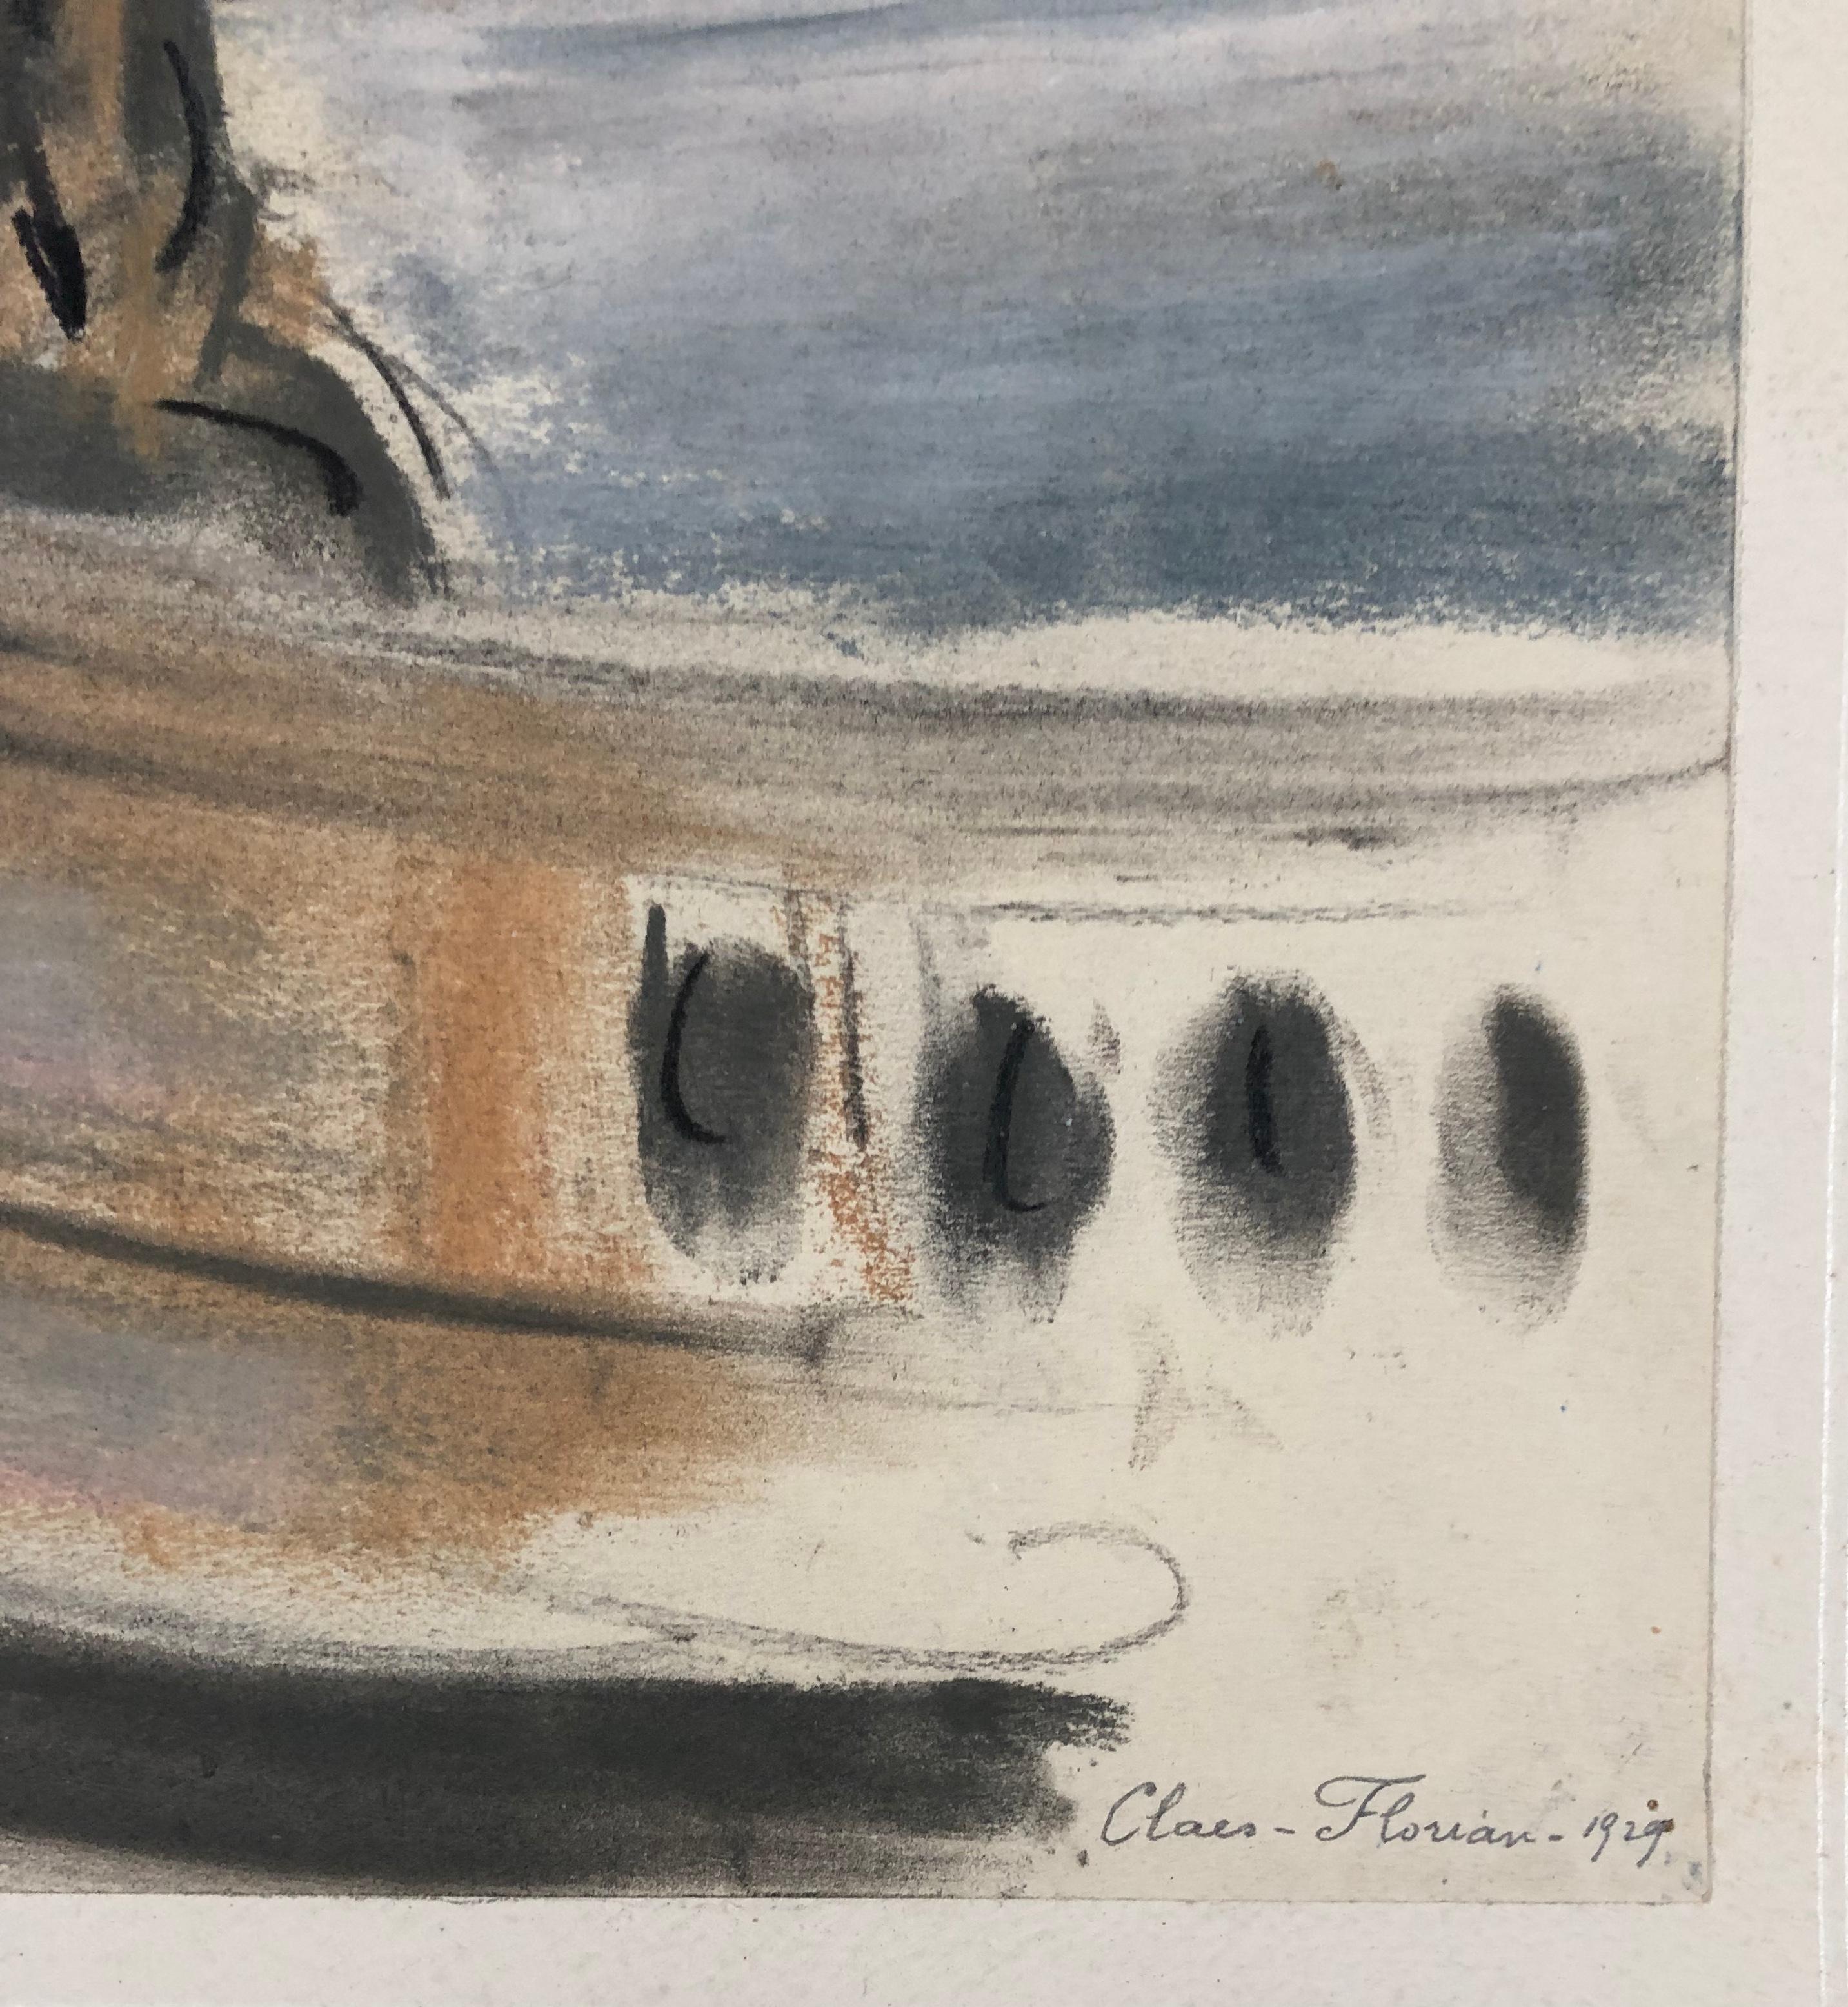 CLAES-THOBOIS Albert
Statue. Pastell. Signiert und datiert 1929.
Provenienz : Sammlung der Geliebten des Künstlers. 

Claes-Thobois wurde 1883 in Ixelles geboren und studierte an der Brüsseler Akademie bei Constant Montald und Herman Richir.  Seine